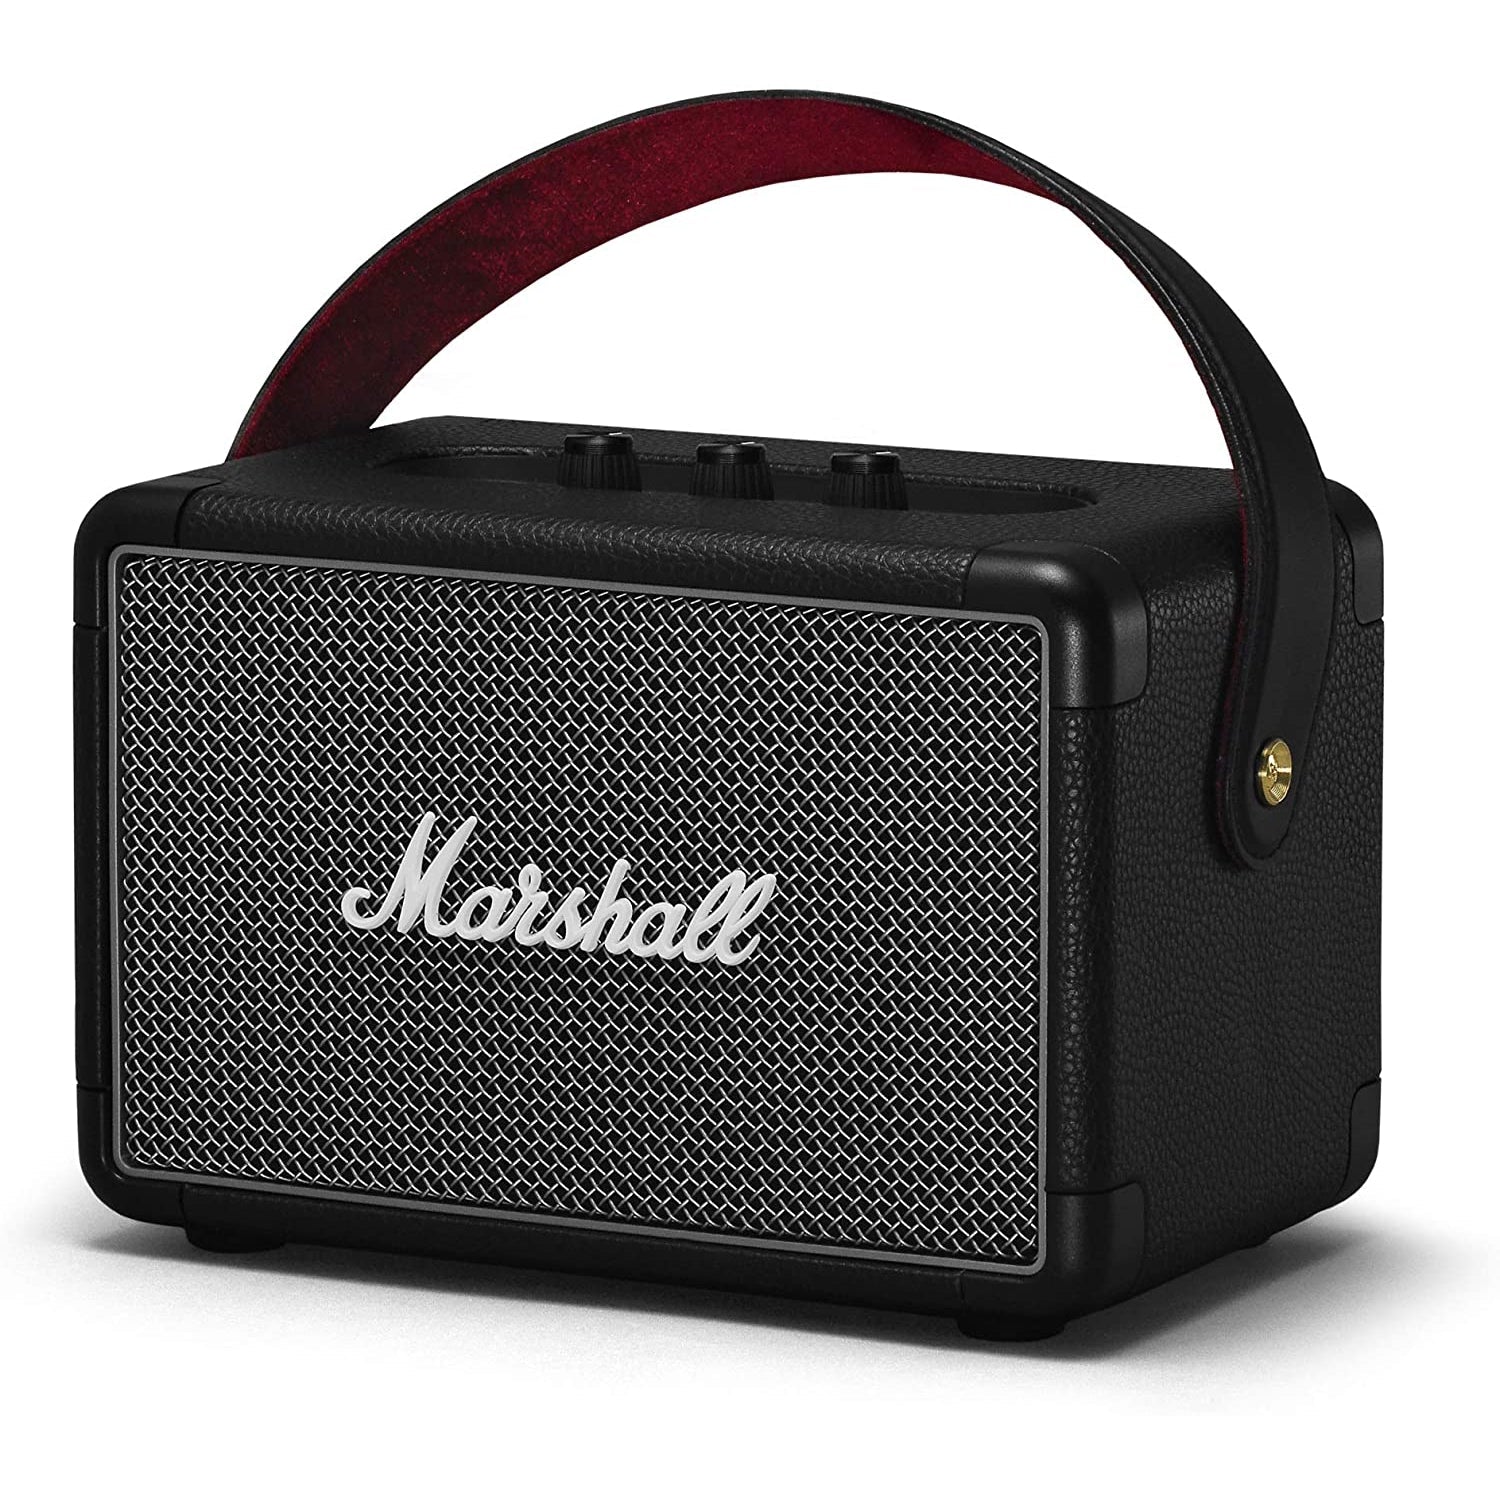 Marshall Kilburn II Bluetooth Speaker - Black - Refurbished Excellent